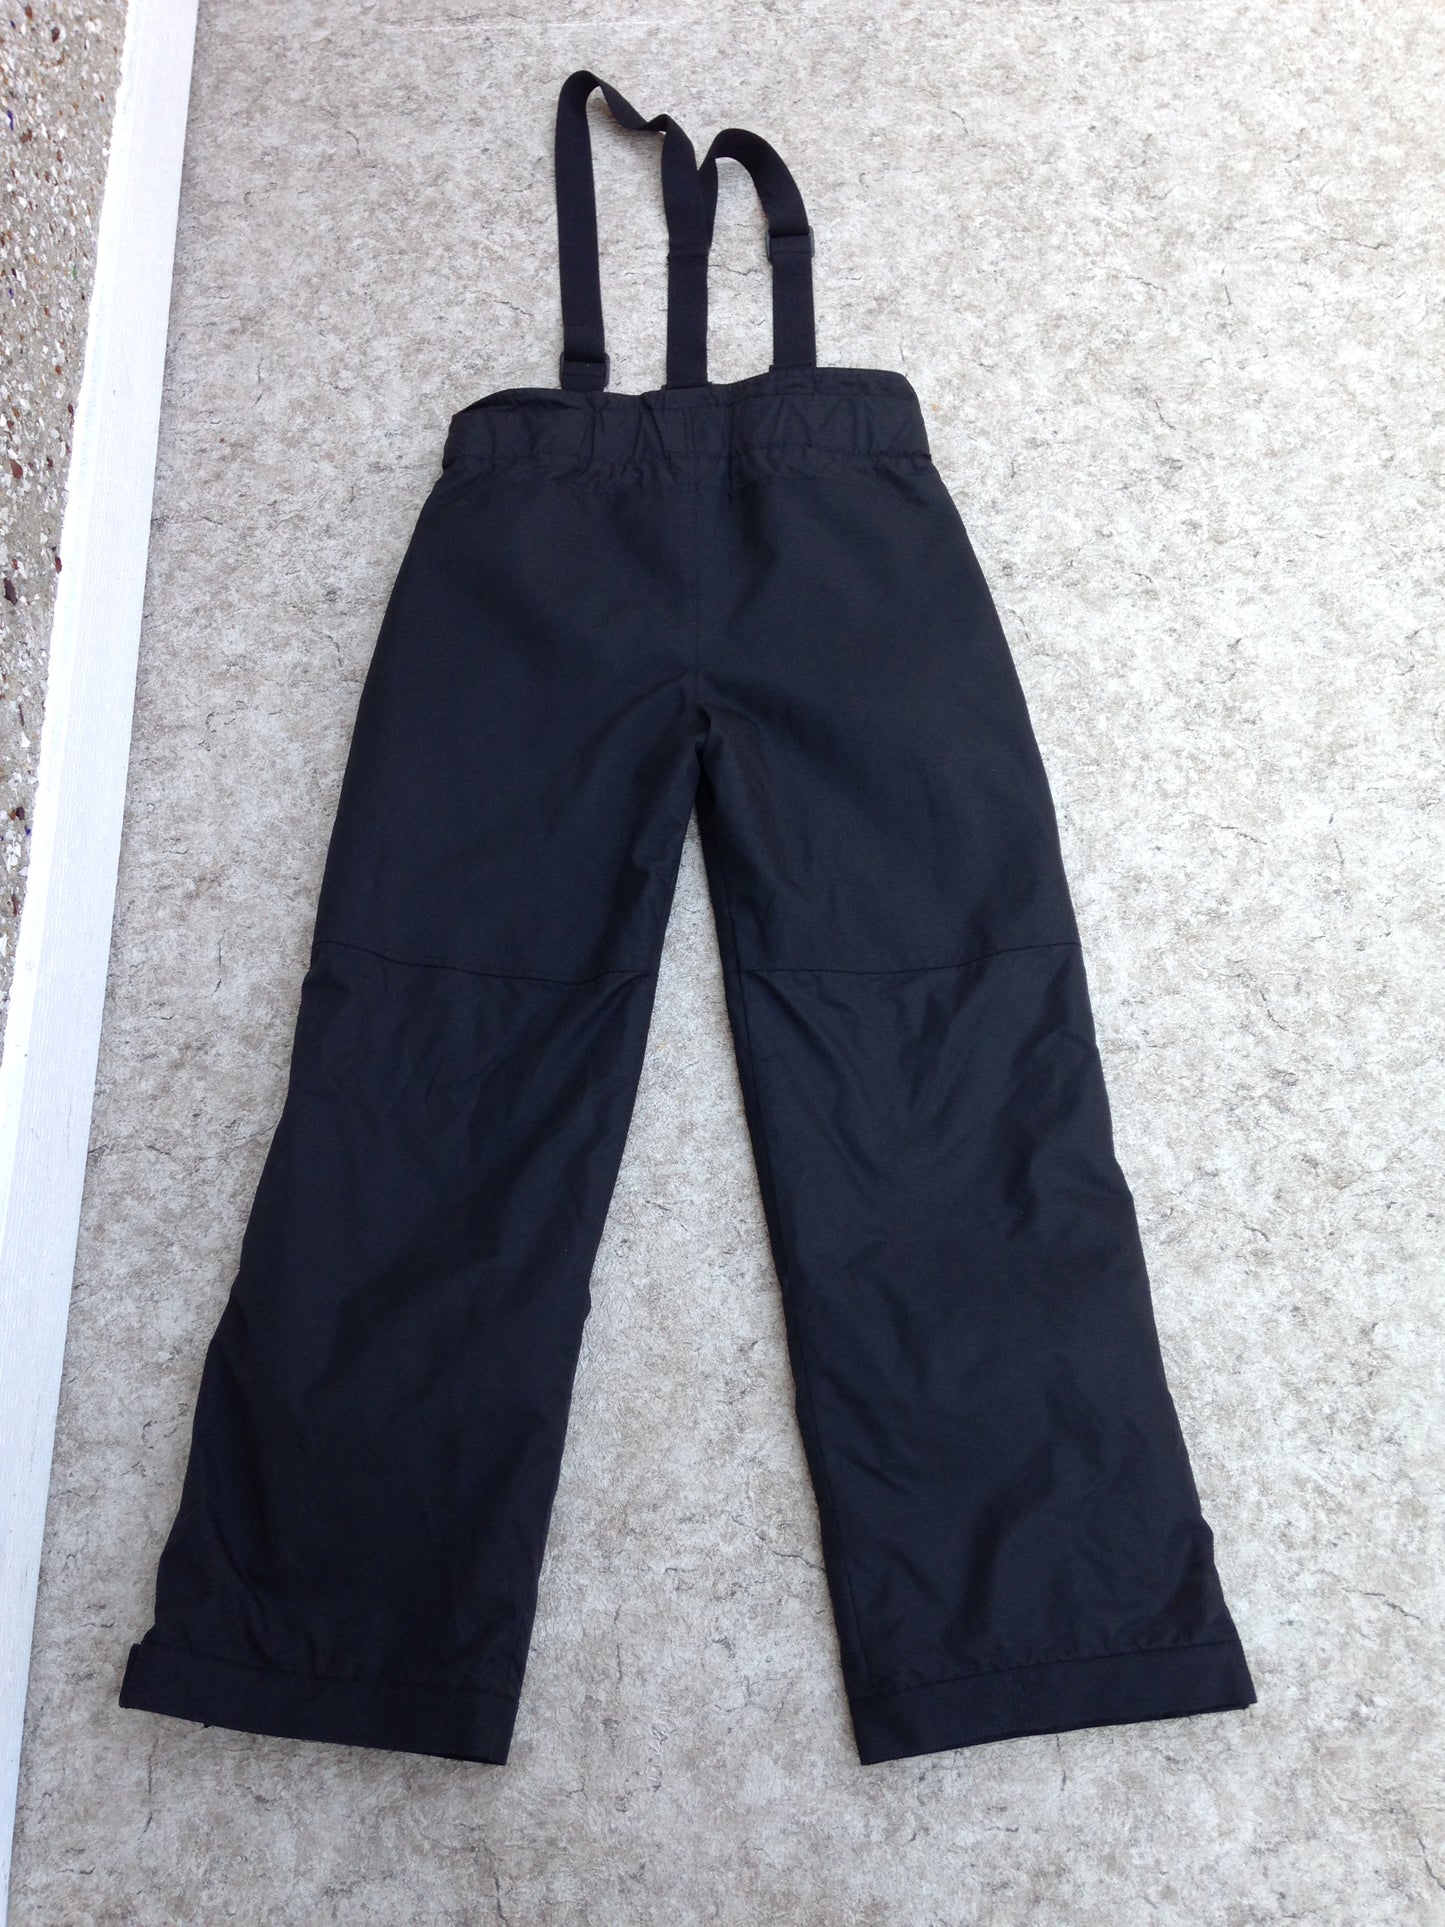 Snow Pants Men's Size Medium Black With Removable Straps Snowboarding Excellent